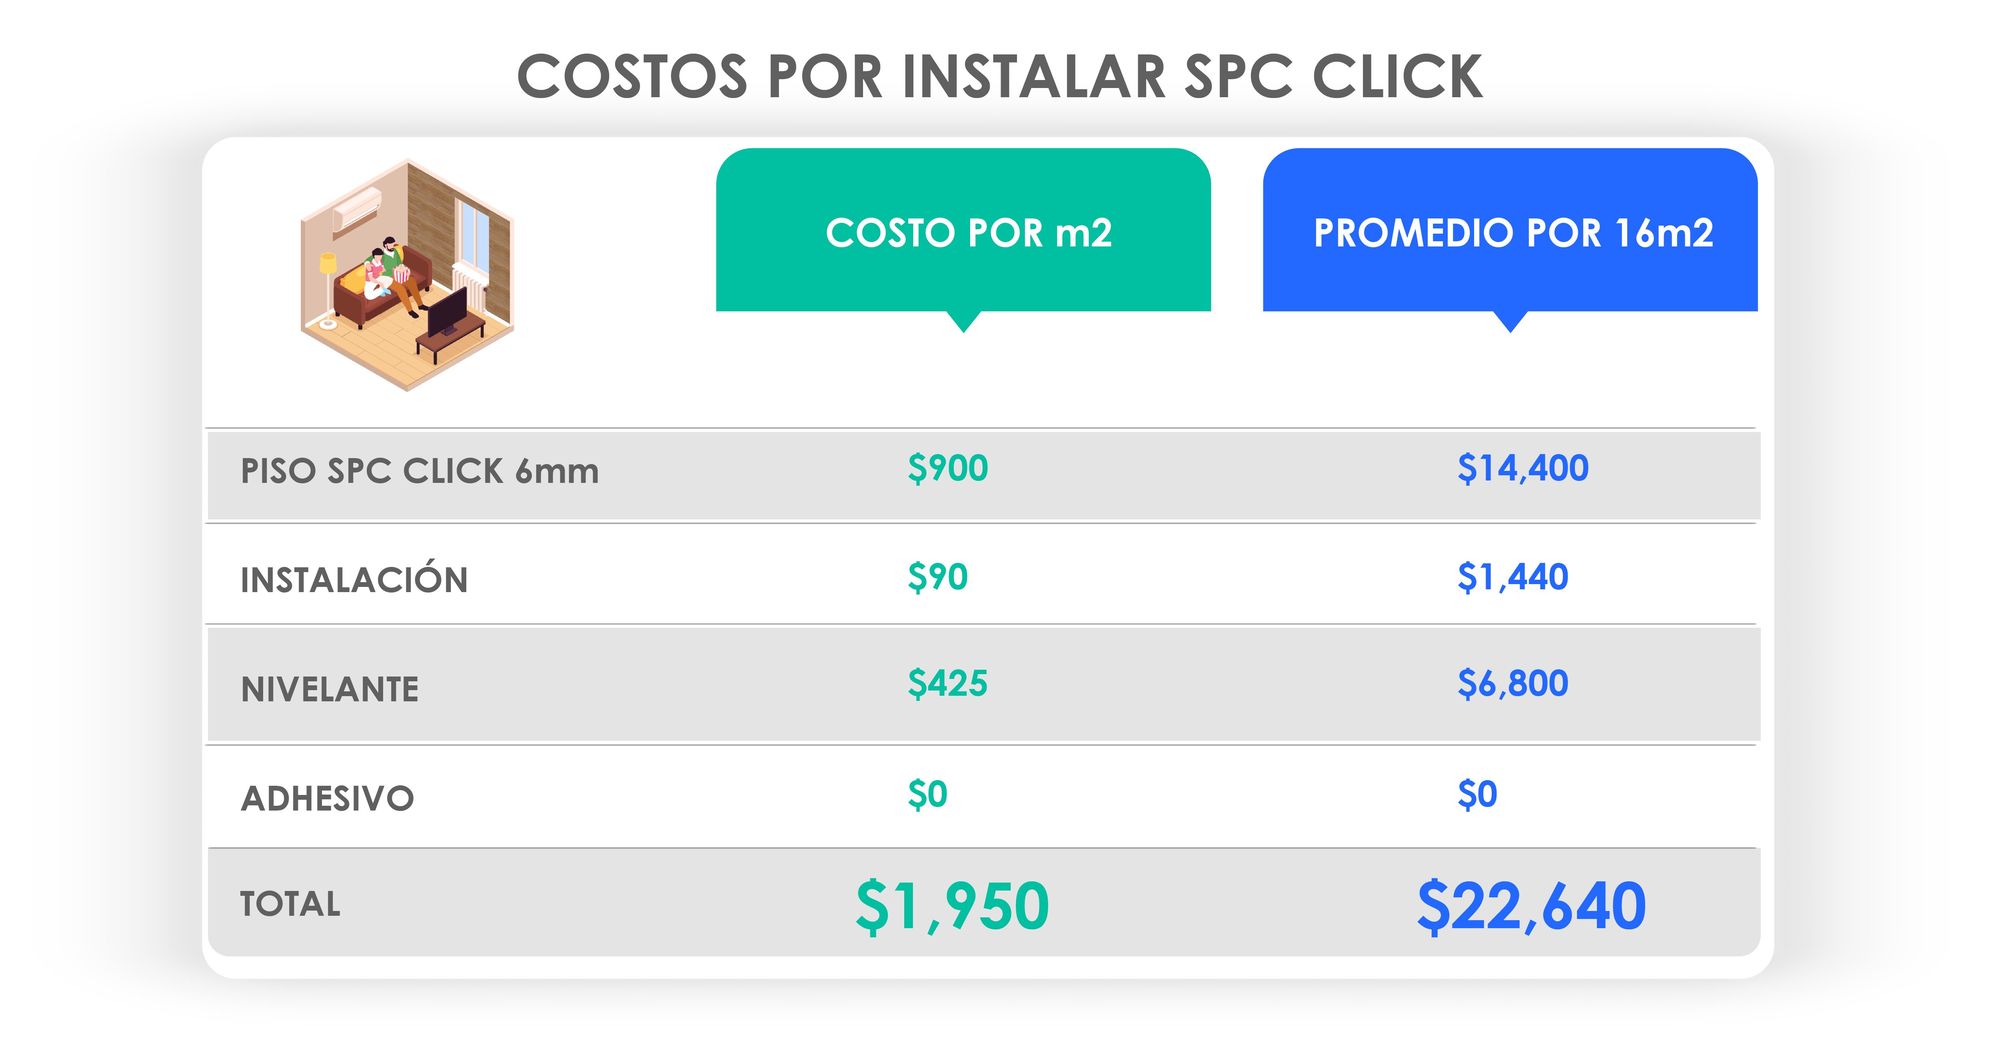 tabla de costos para instalar piso SPC Click